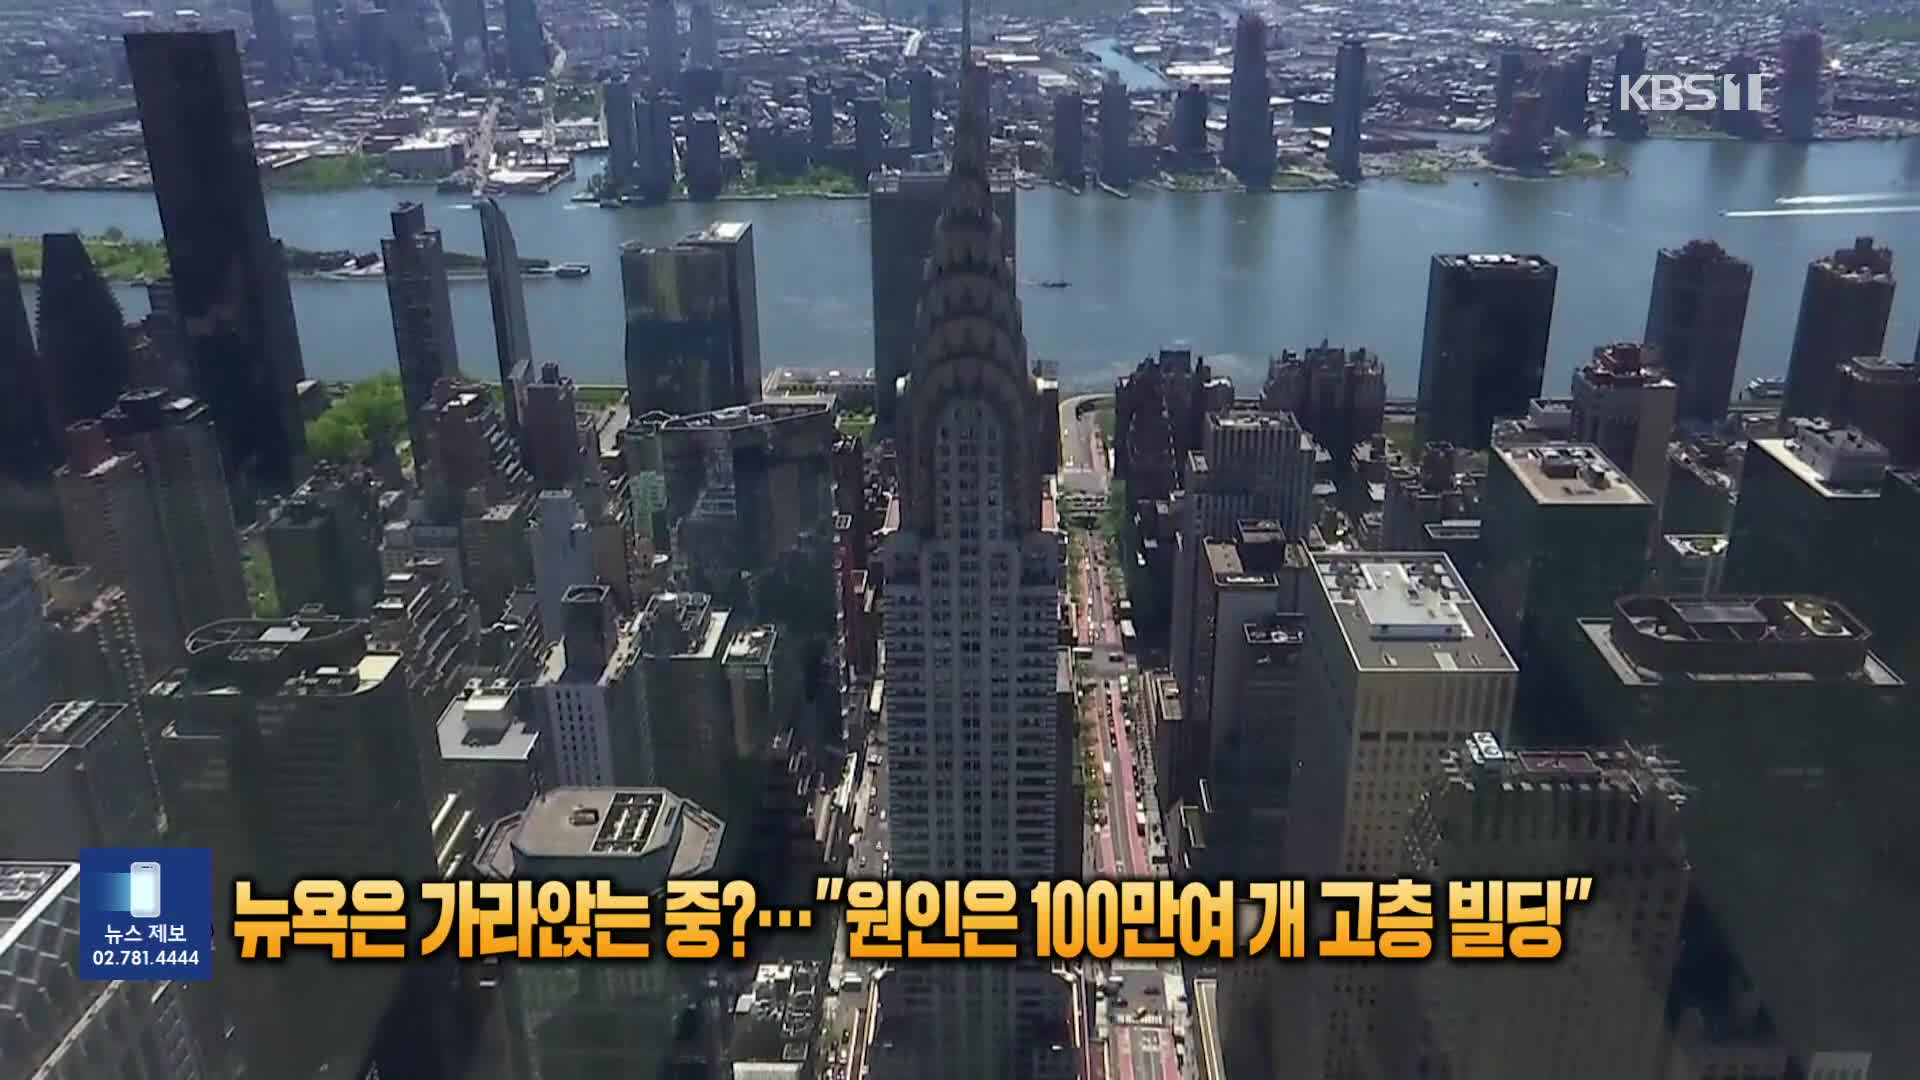 [잇슈 SNS] 뉴욕은 가라앉는 중?…“원인은 100만여 개 고층빌딩”